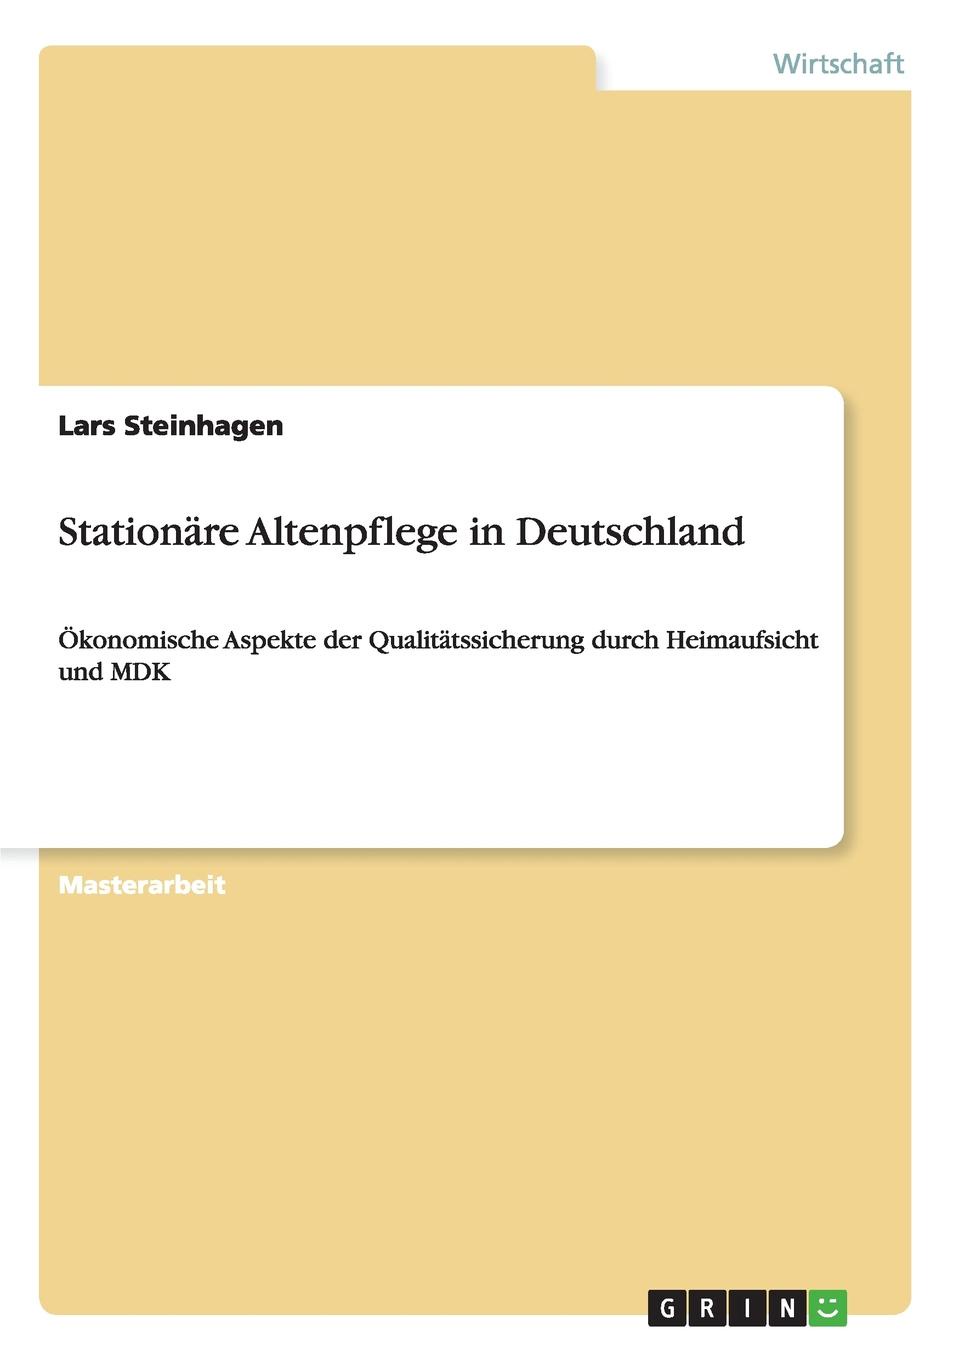 Stationare Altenpflege in Deutschland